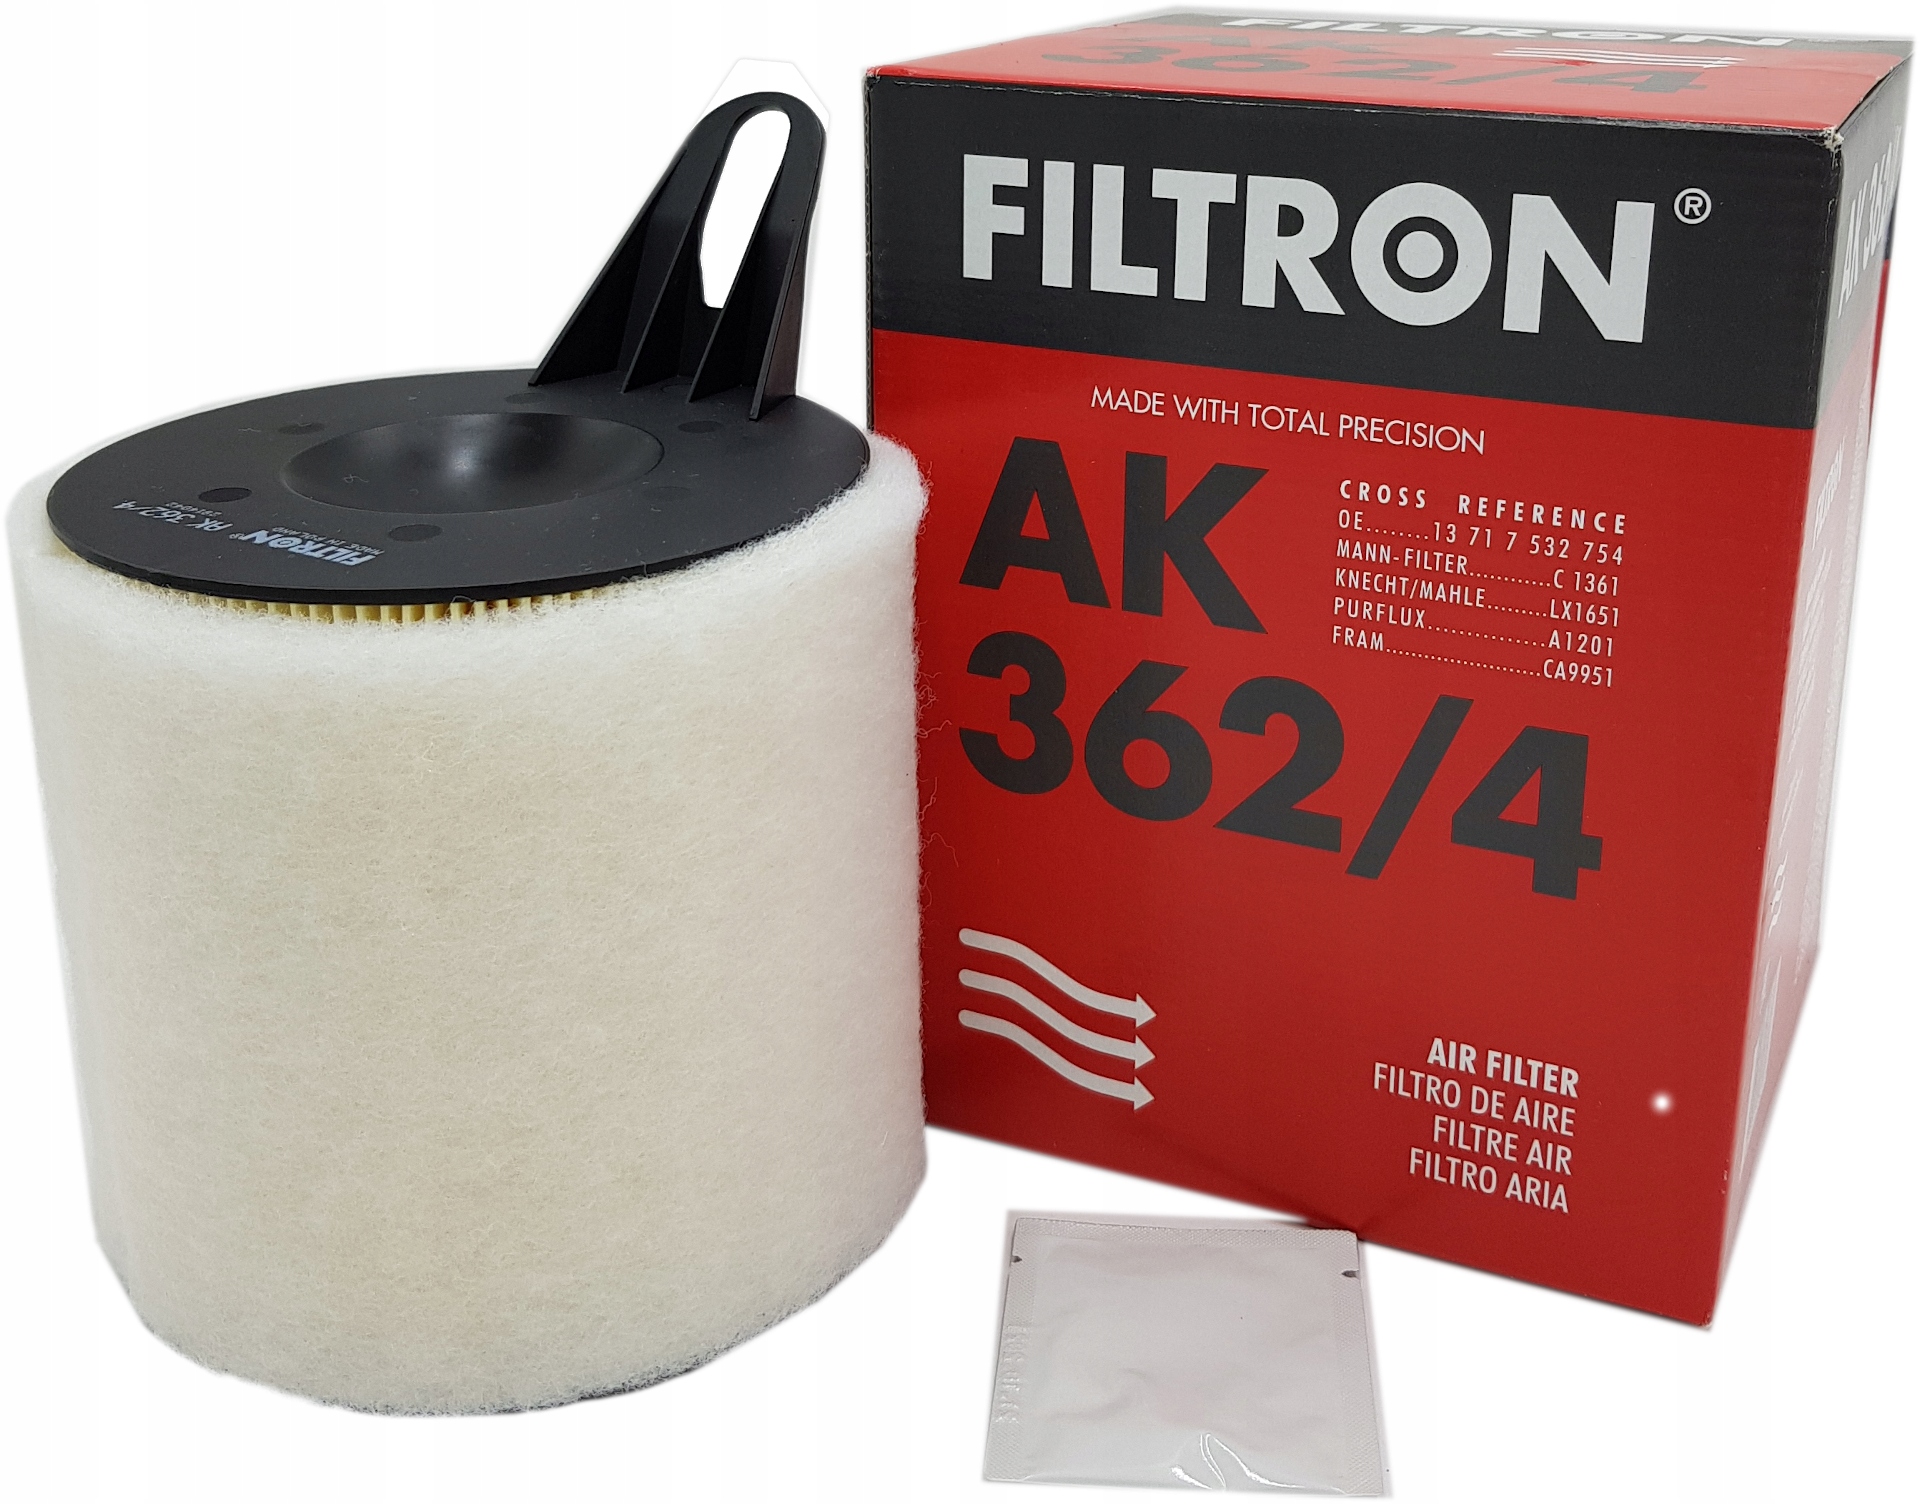 Фильтр воздушный 3 4. Фильтрон AK 362/4. Ak362/4 FILTRON фильтр воздушный. FILTRON ak362/3. Цилиндрический фильтр FILTRON ak362/3.